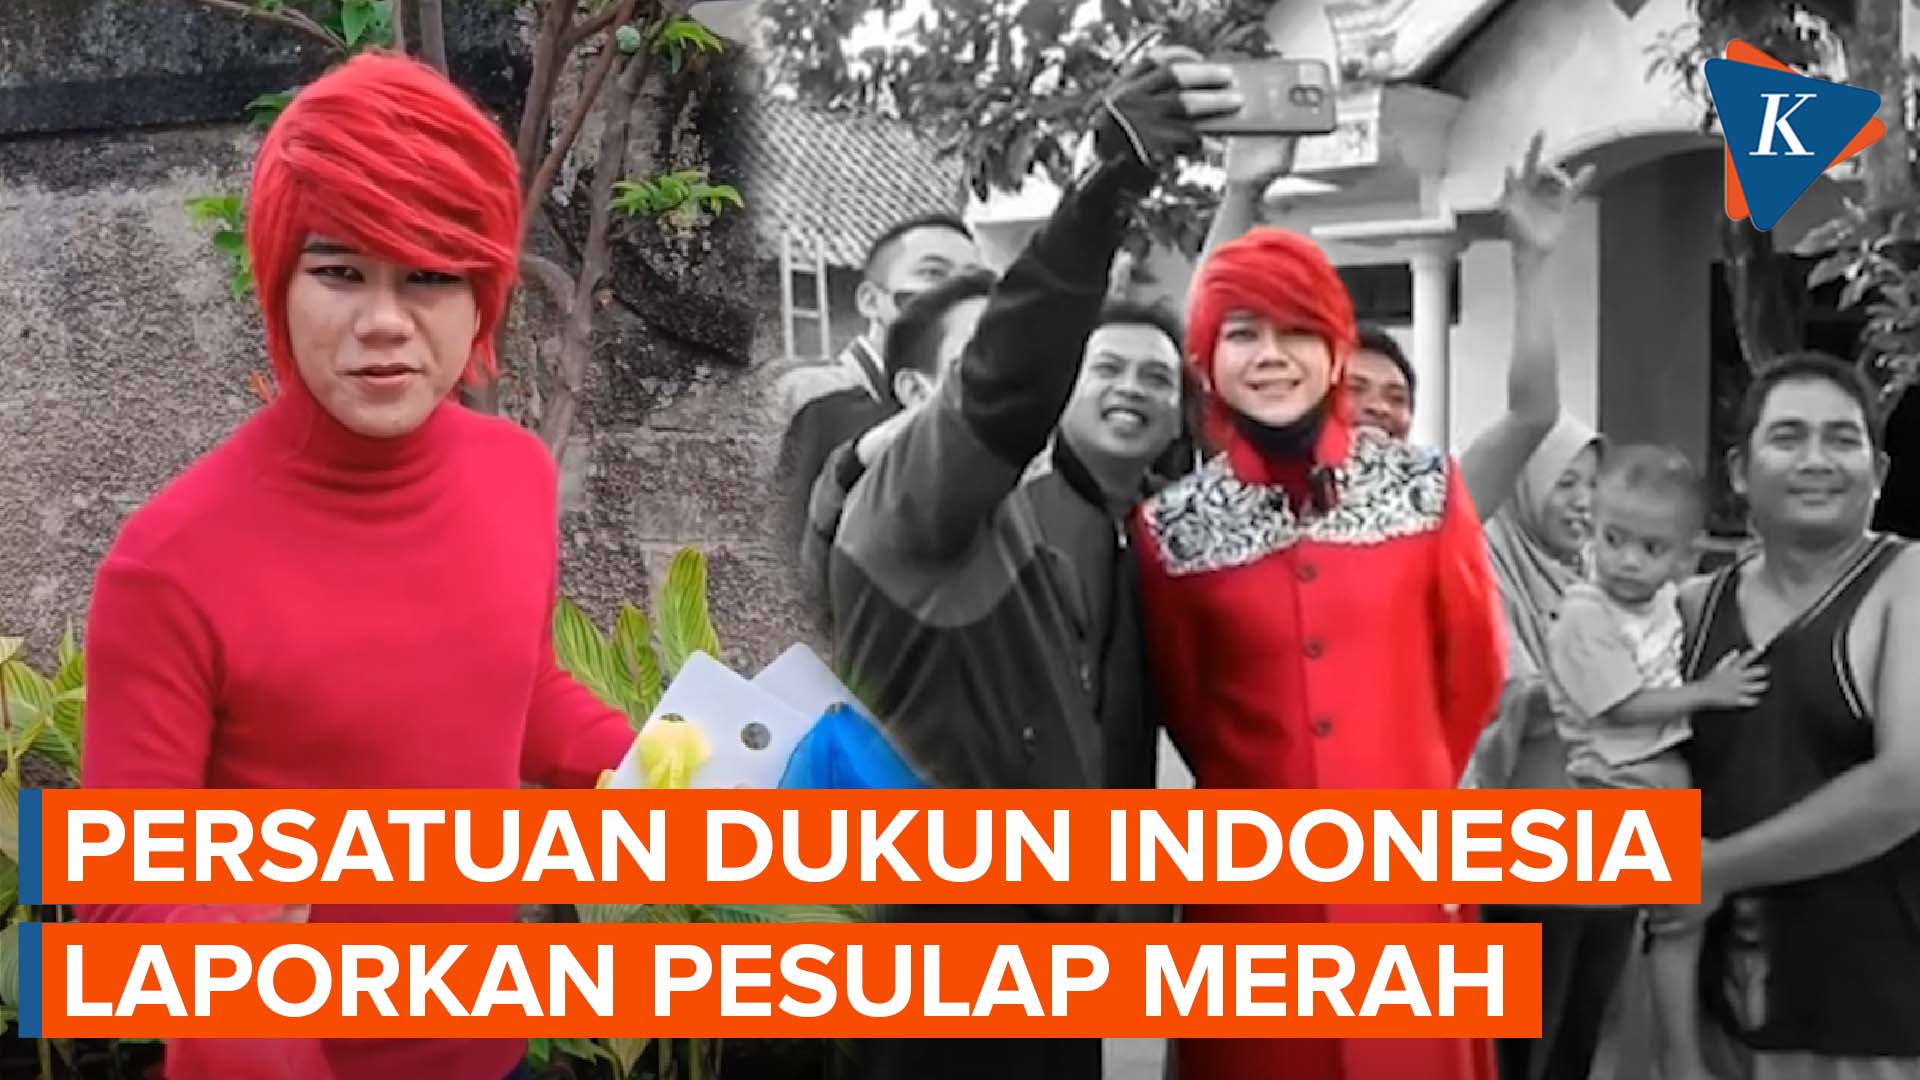 Polisi Dalami Laporan Persatuan Dukun Indonesia terhadap Pesulap Merah